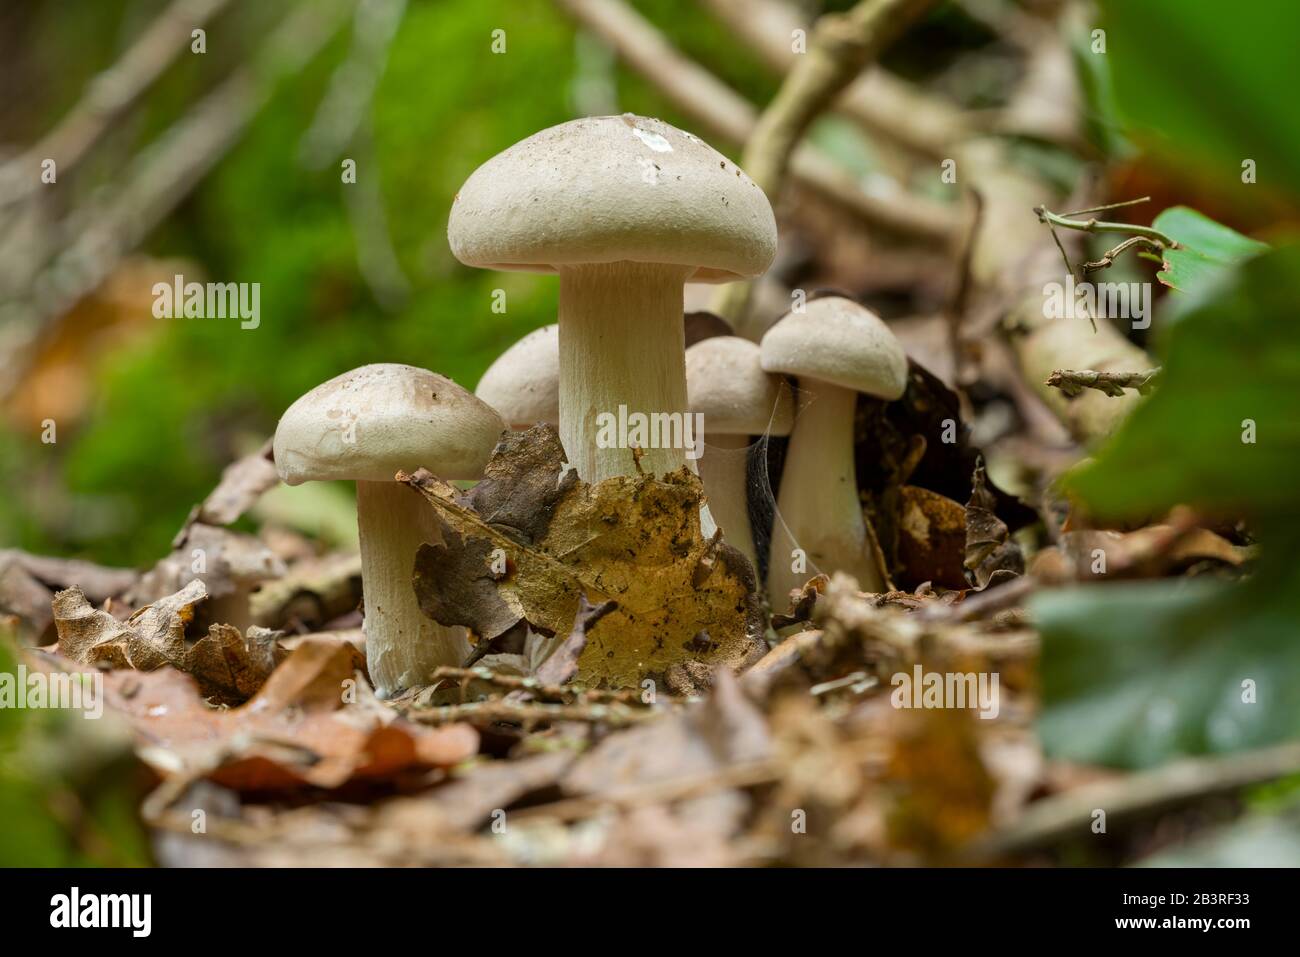 Getrübter Trichter (Clitocybe nebularis) Pilze, die in der Blattwurz auf einem Waldboden wachsen. Stockfoto